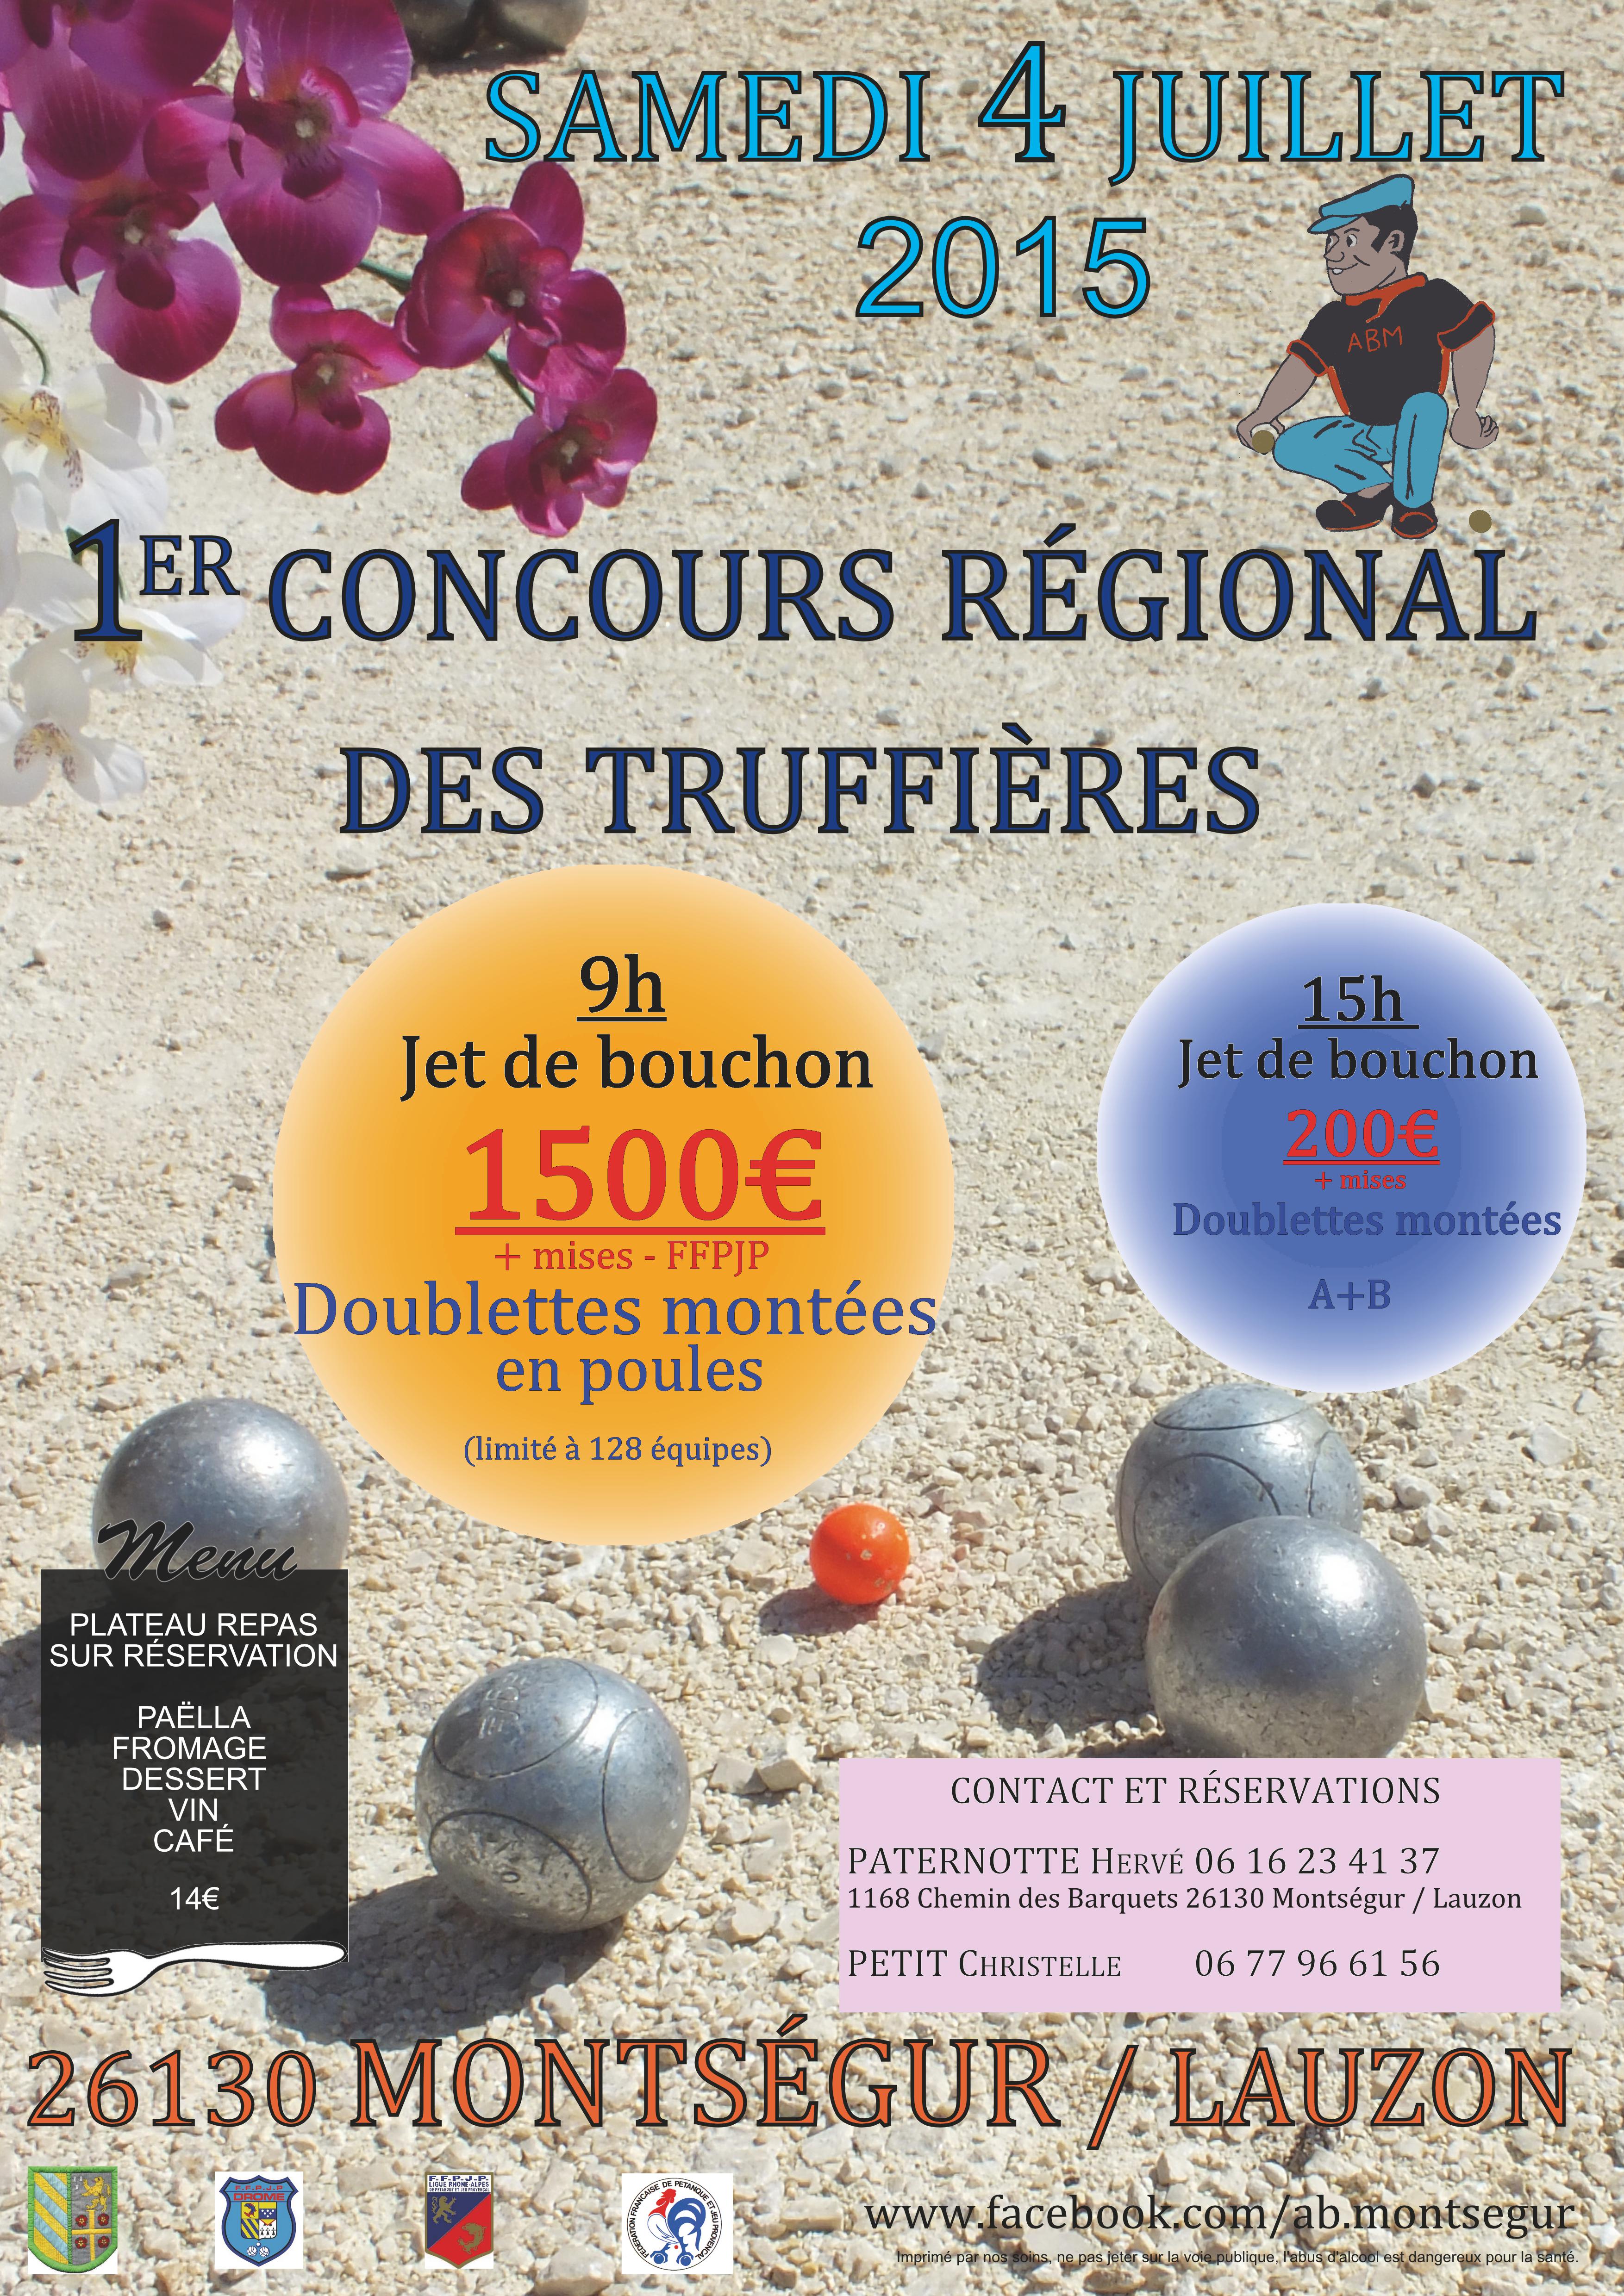 Concours régional des truffières samedi 4 juillet 2015